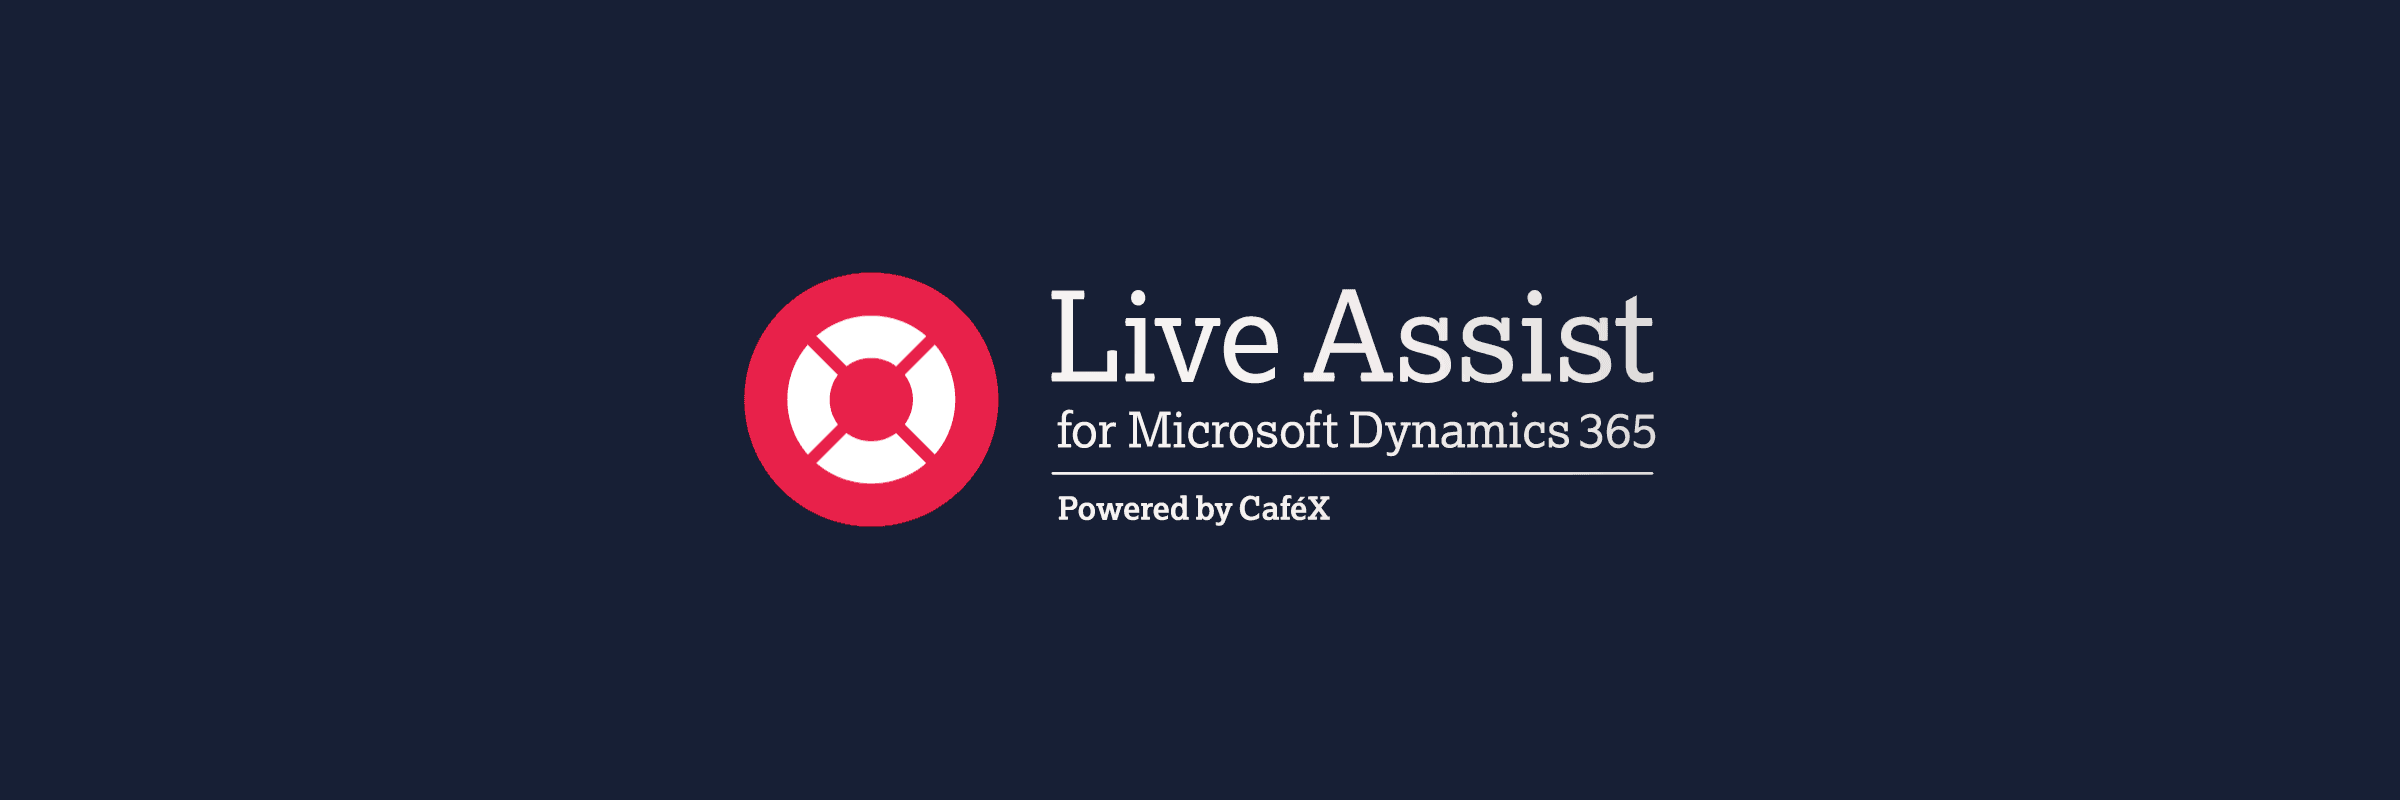 Live Assist for Microsoft Dynamics 365